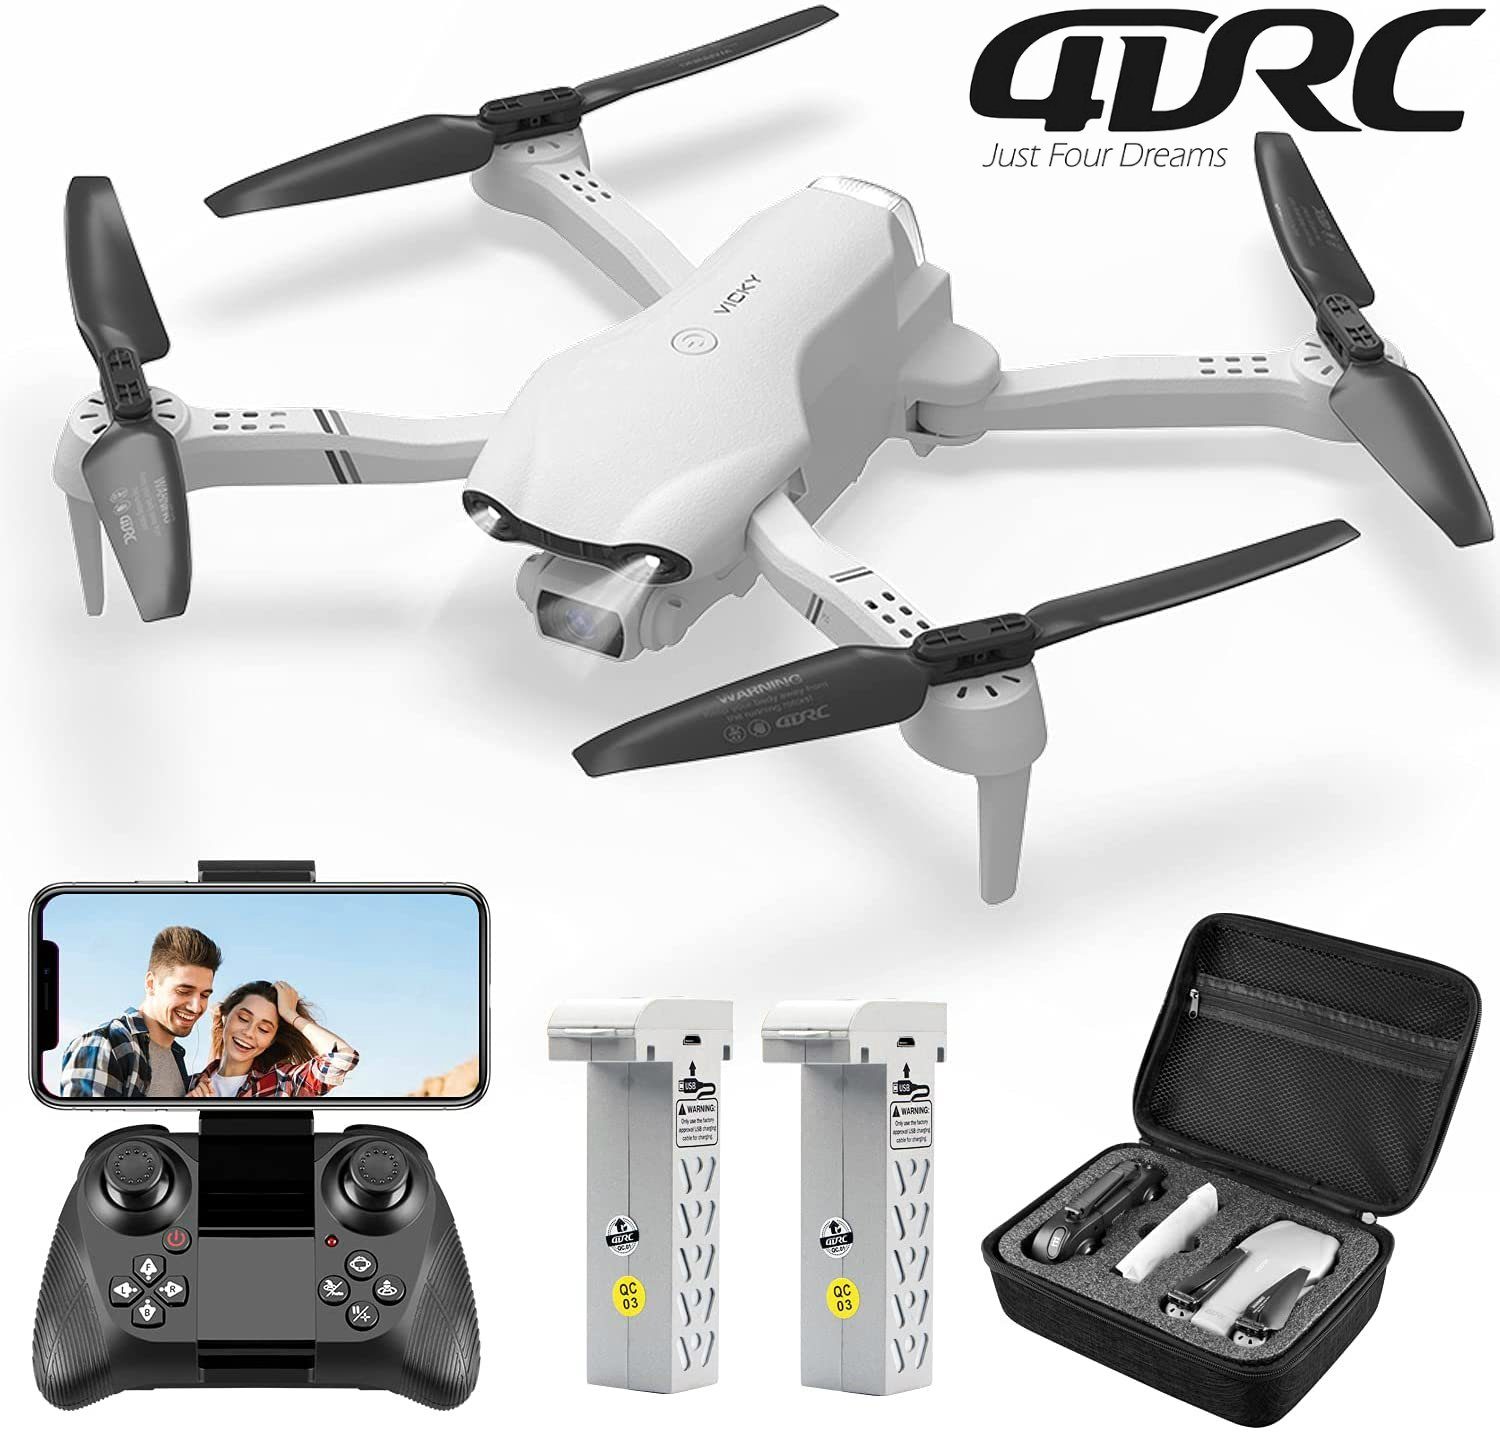 4DRC für Kinder Minuten (1080P Flugzeit, automatischer Schwebeflug) Quadcopter 32 Anfänger, Spielzeug-Drohne & Weiß FPV-Live-Video, HD, F10, klappbarer